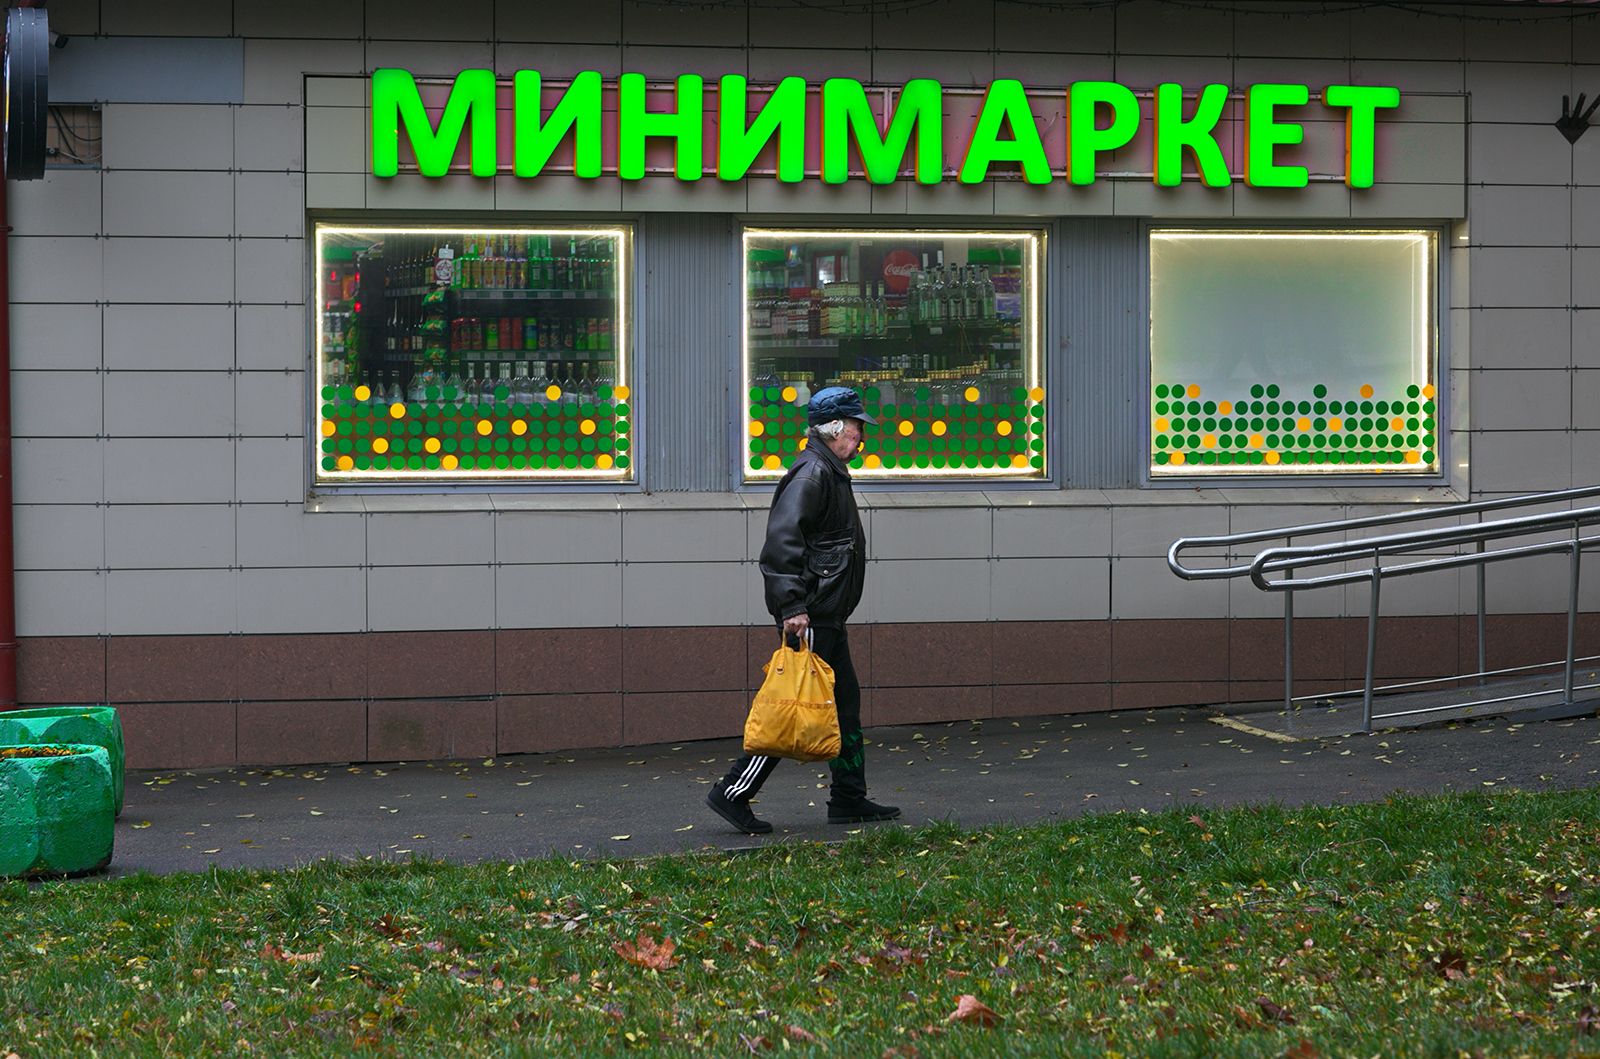 дата 11.11.22, городские картинки, цвет зеленый, уличное фото, Vera Trandina